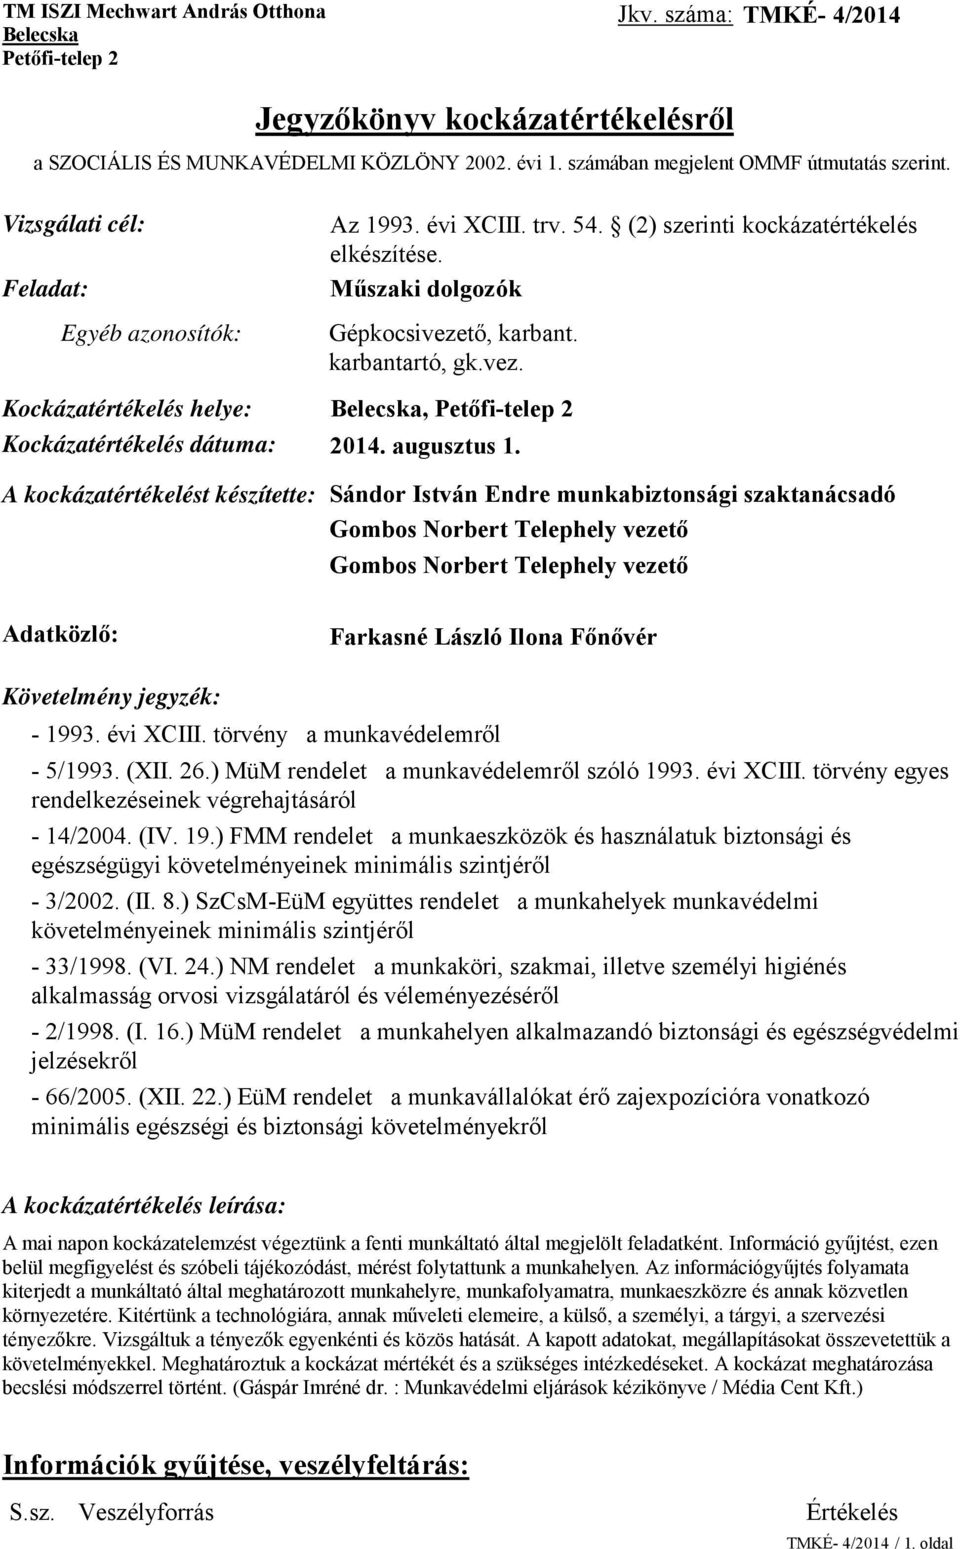 karbantartó, gk.vez. Kockázatértékelés helye: Belecska, Petőfi-telep 2 Kockázatértékelés dátuma: 2014. augusztus 1.